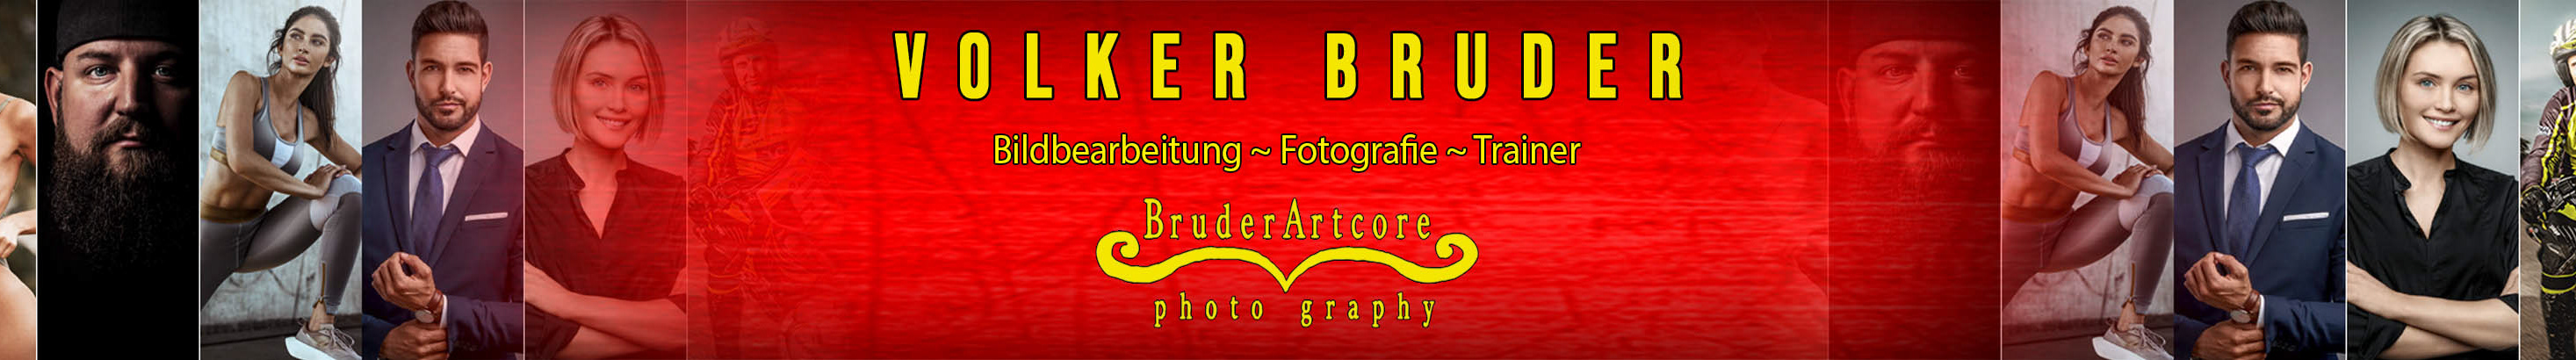 Volker Bruder's profile banner